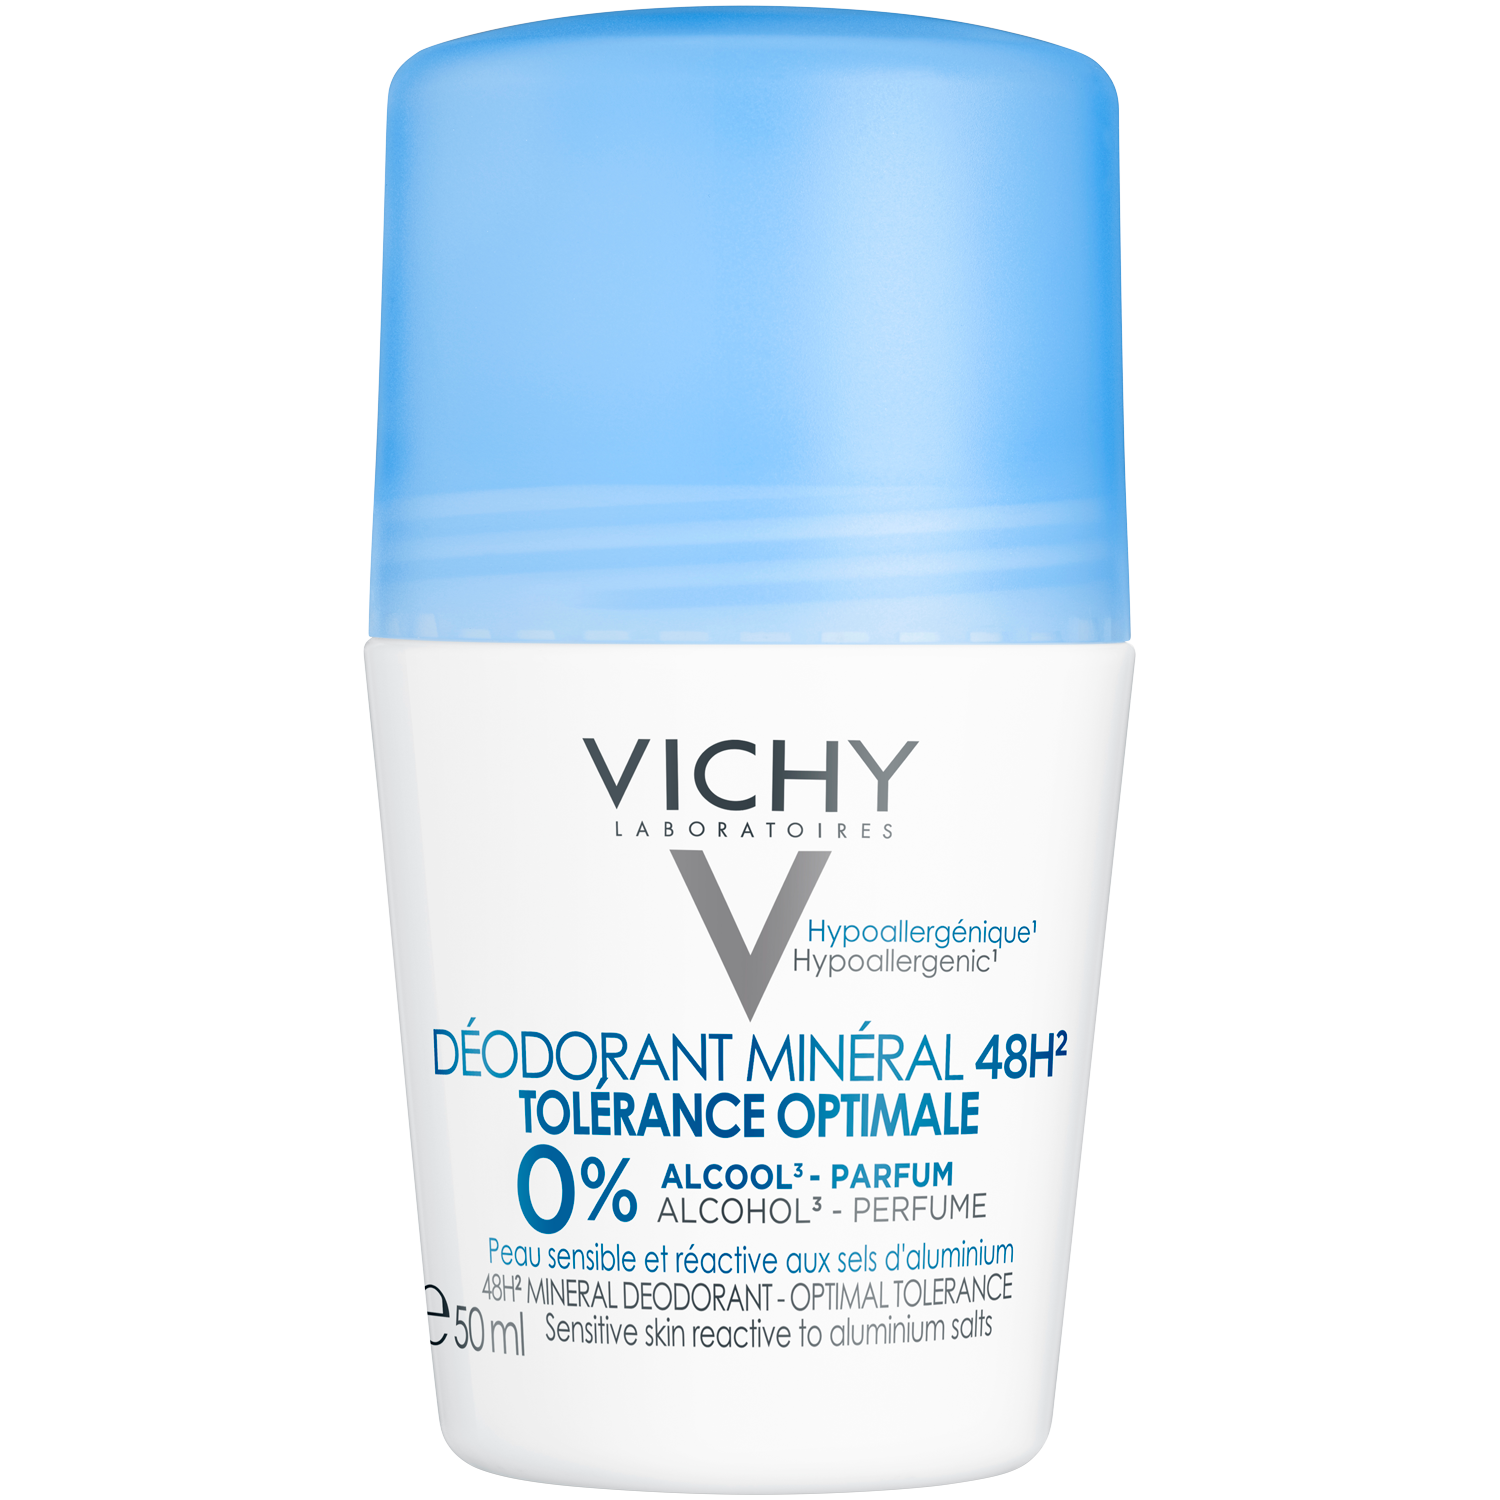 Vichy Tolerance дезодорант минеральный 48ч шариковый, 50 мл минеральный дезодорант 48h optimal tolerance шариковый 50 мл vichy